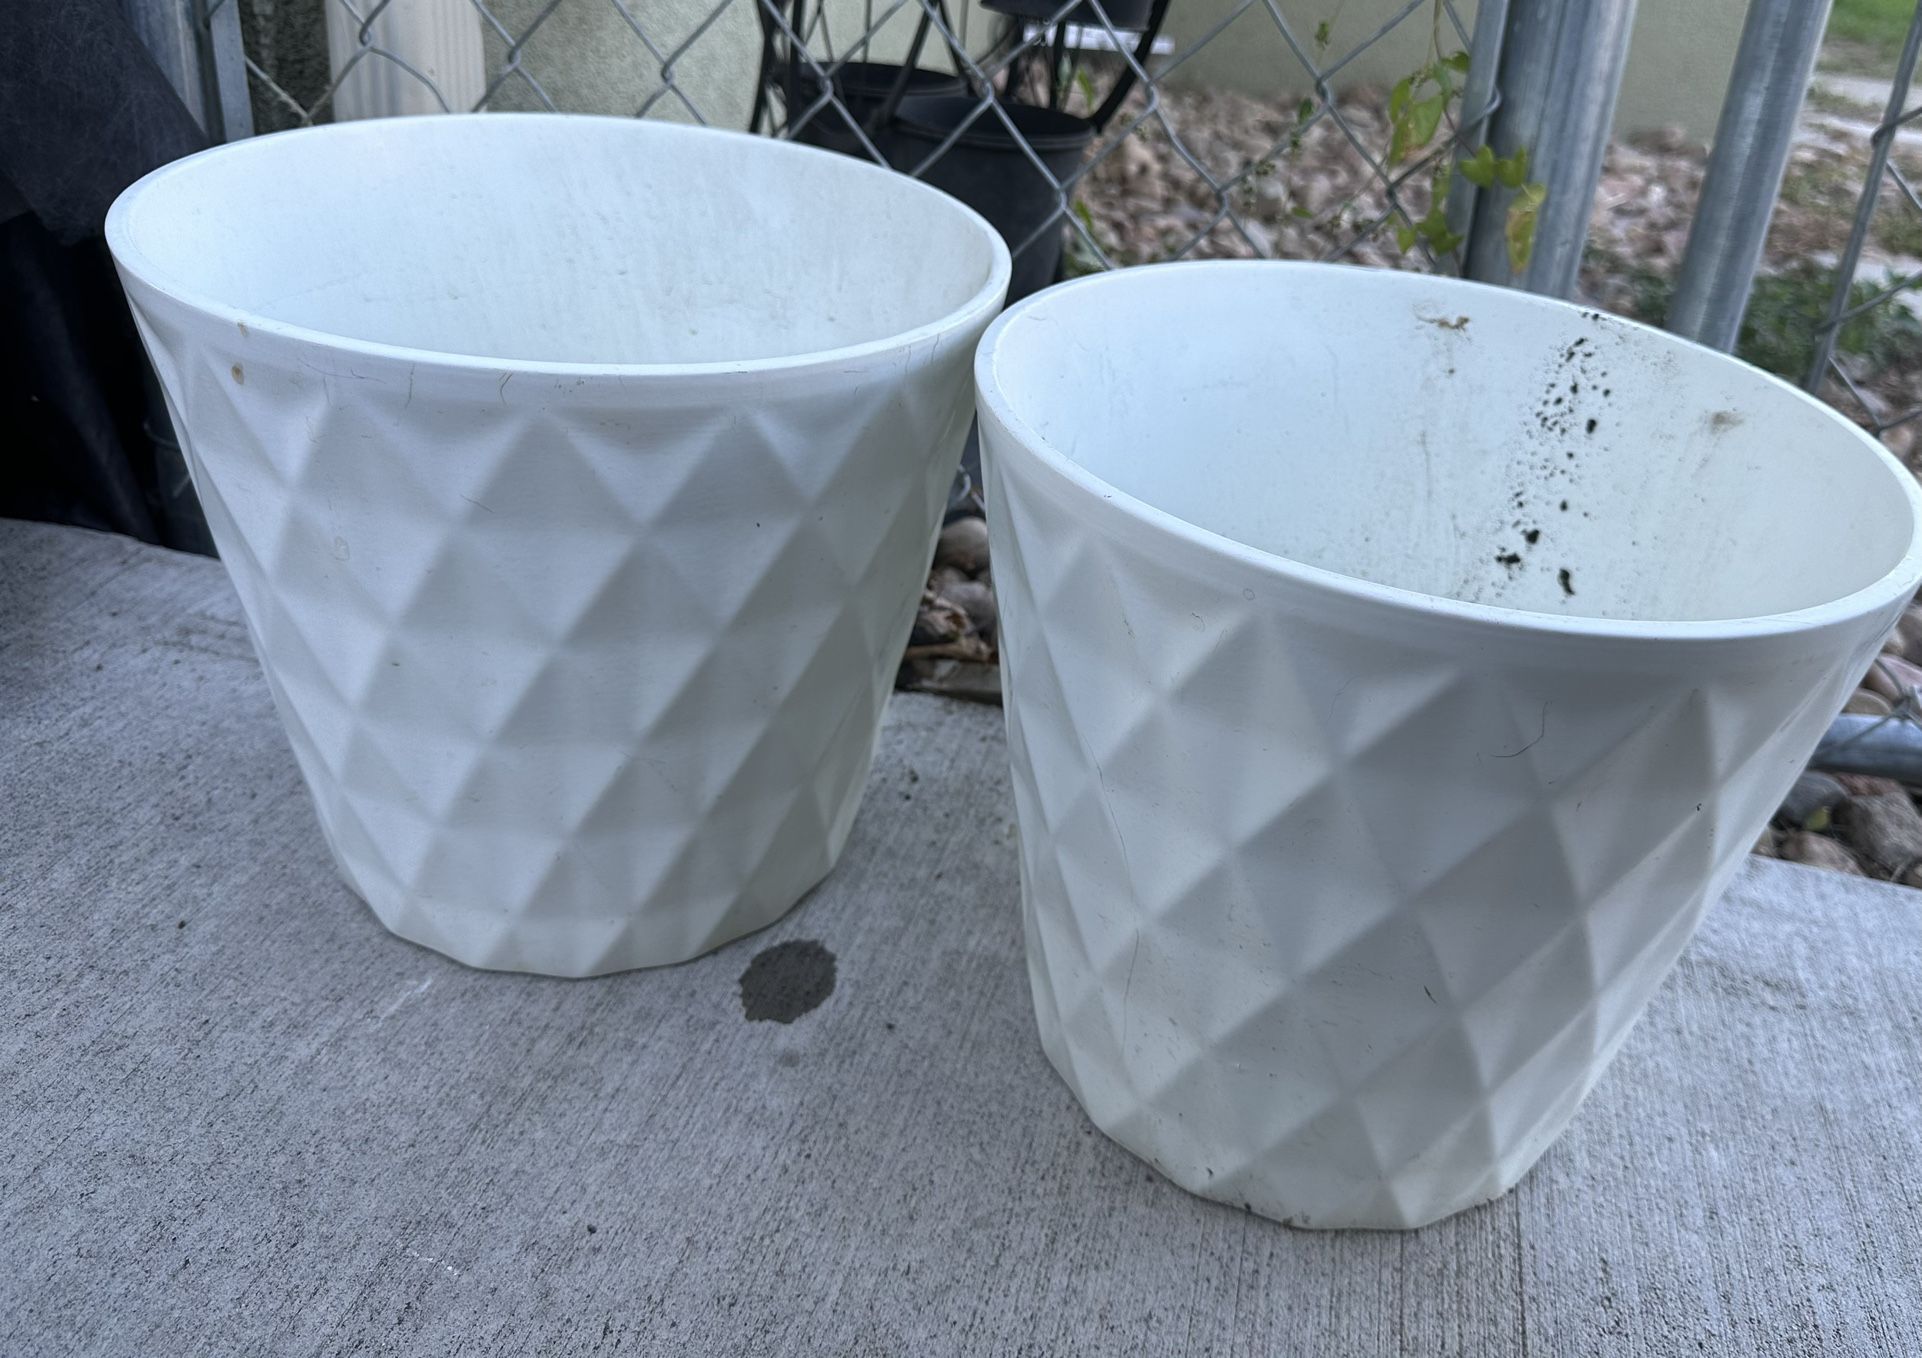 Matching Flower Pots 